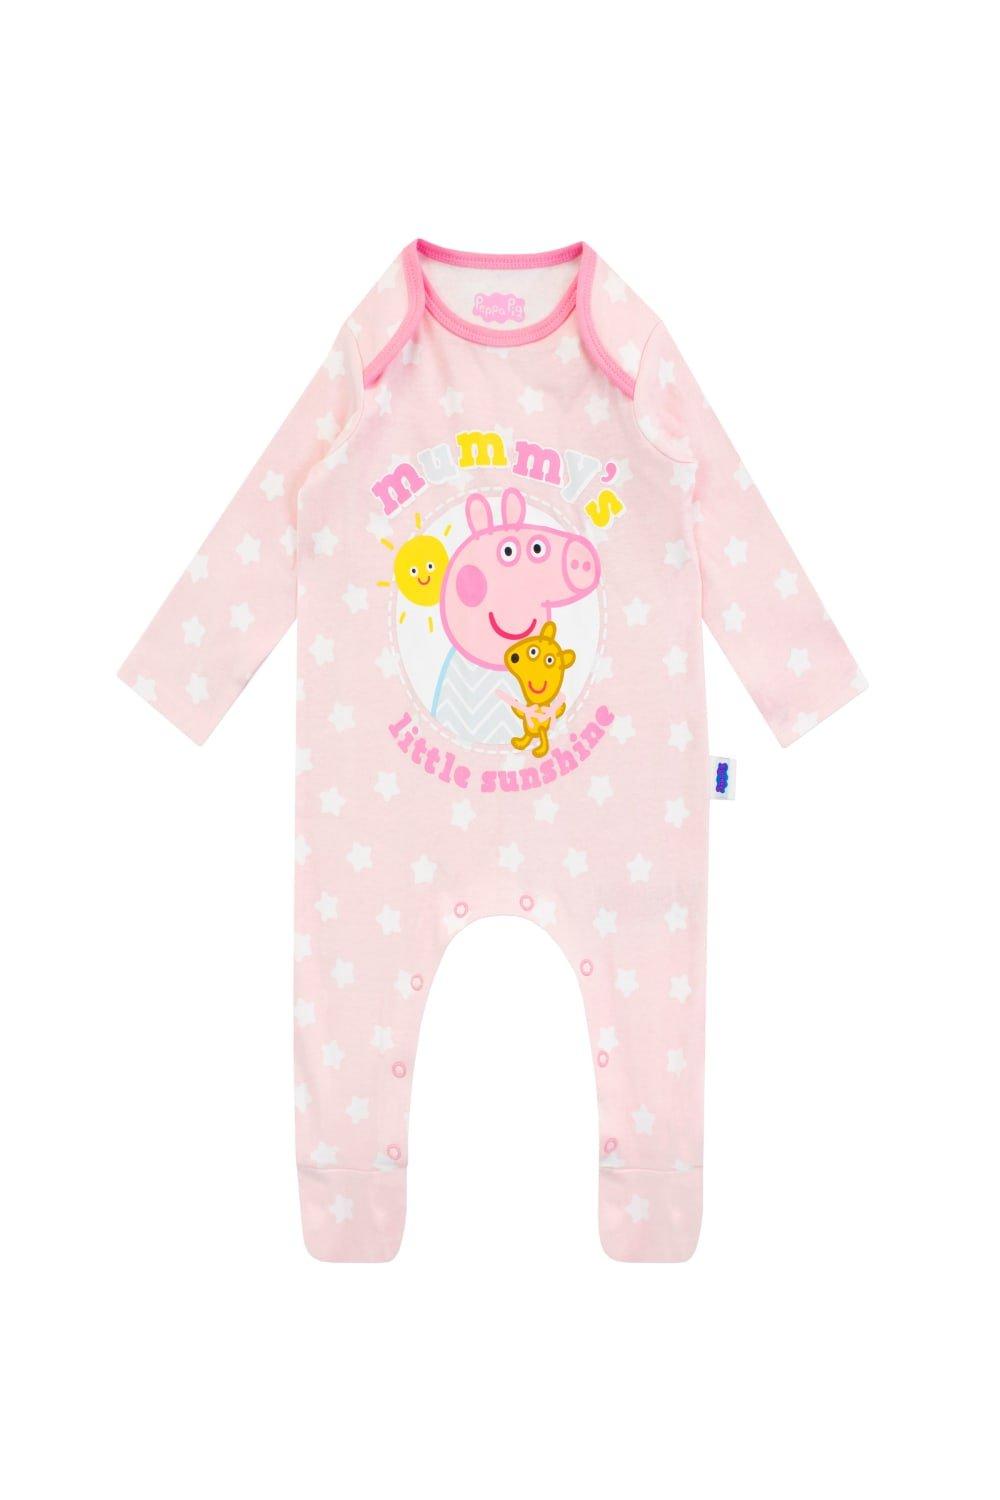 Детский комбинезон Mummy's Little Sunshine Peppa Pig, розовый рюкзачок свинка пеппа малый cчастье